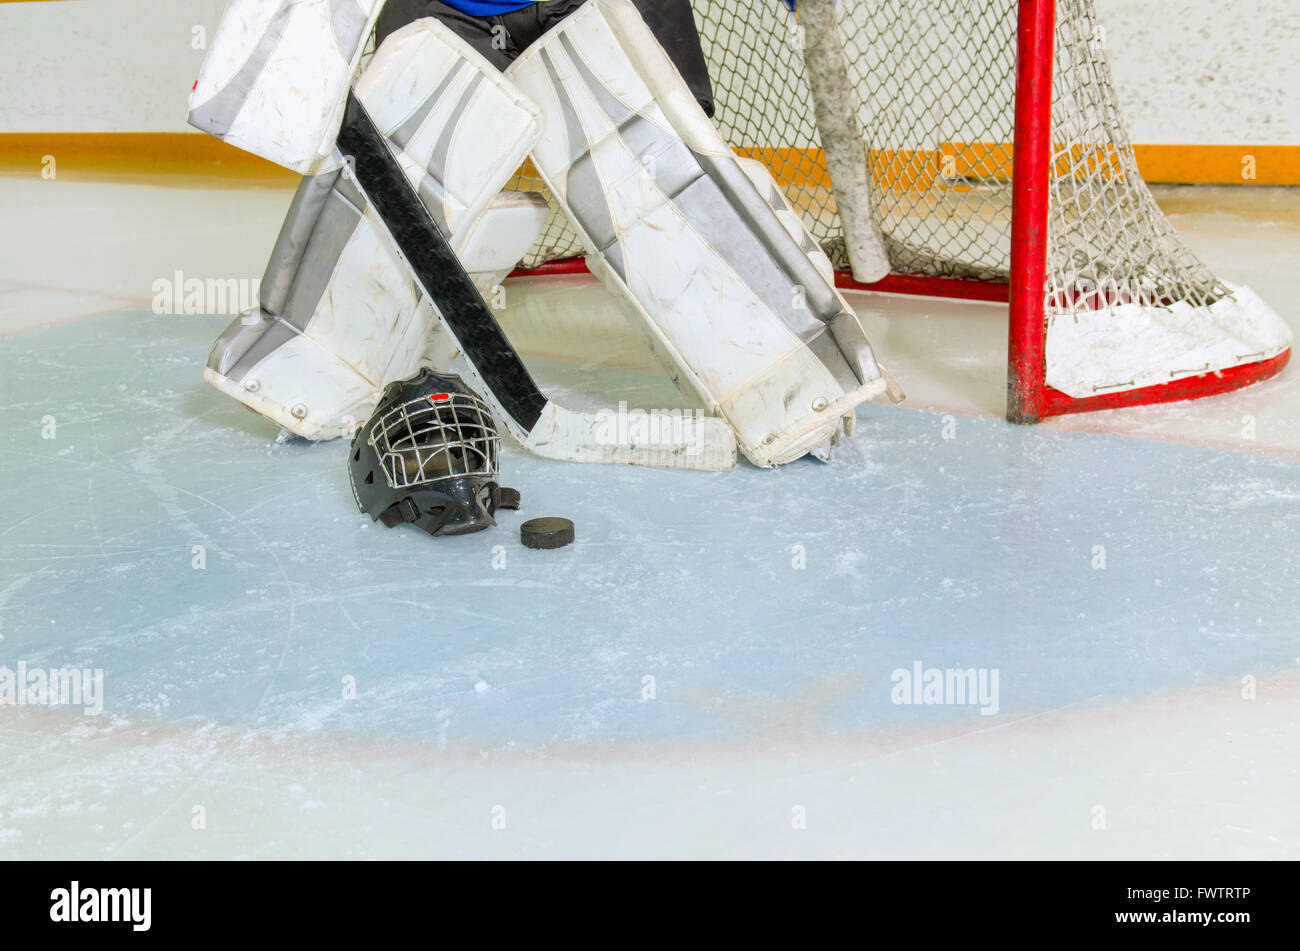 Ein Eishockey-Torwart bereitet sich in der Lidfalte und Net vor Spiel in Rink Stockfoto